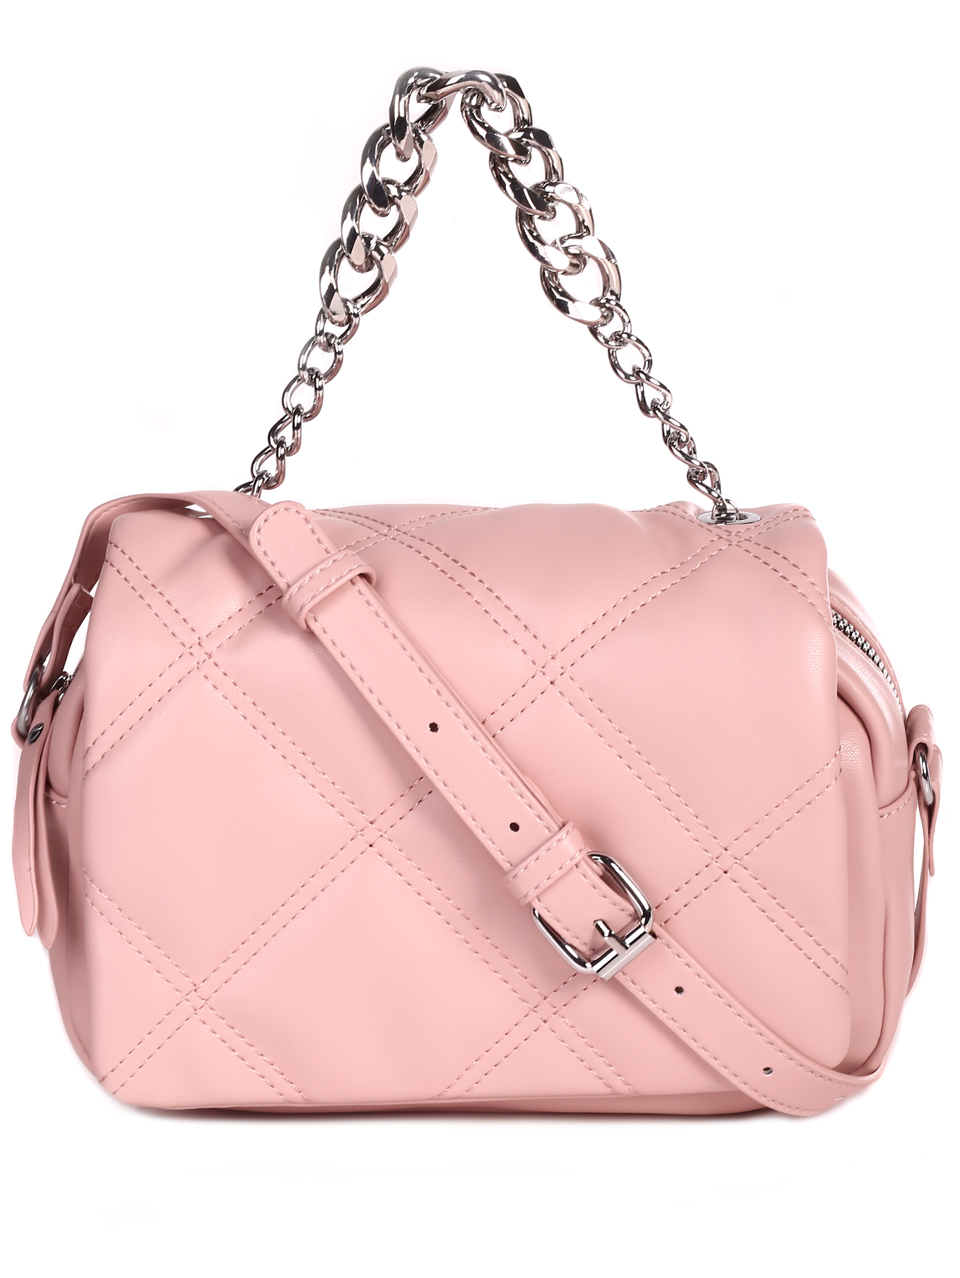 Дамска малка чанта в розово 9Q-23067 pink